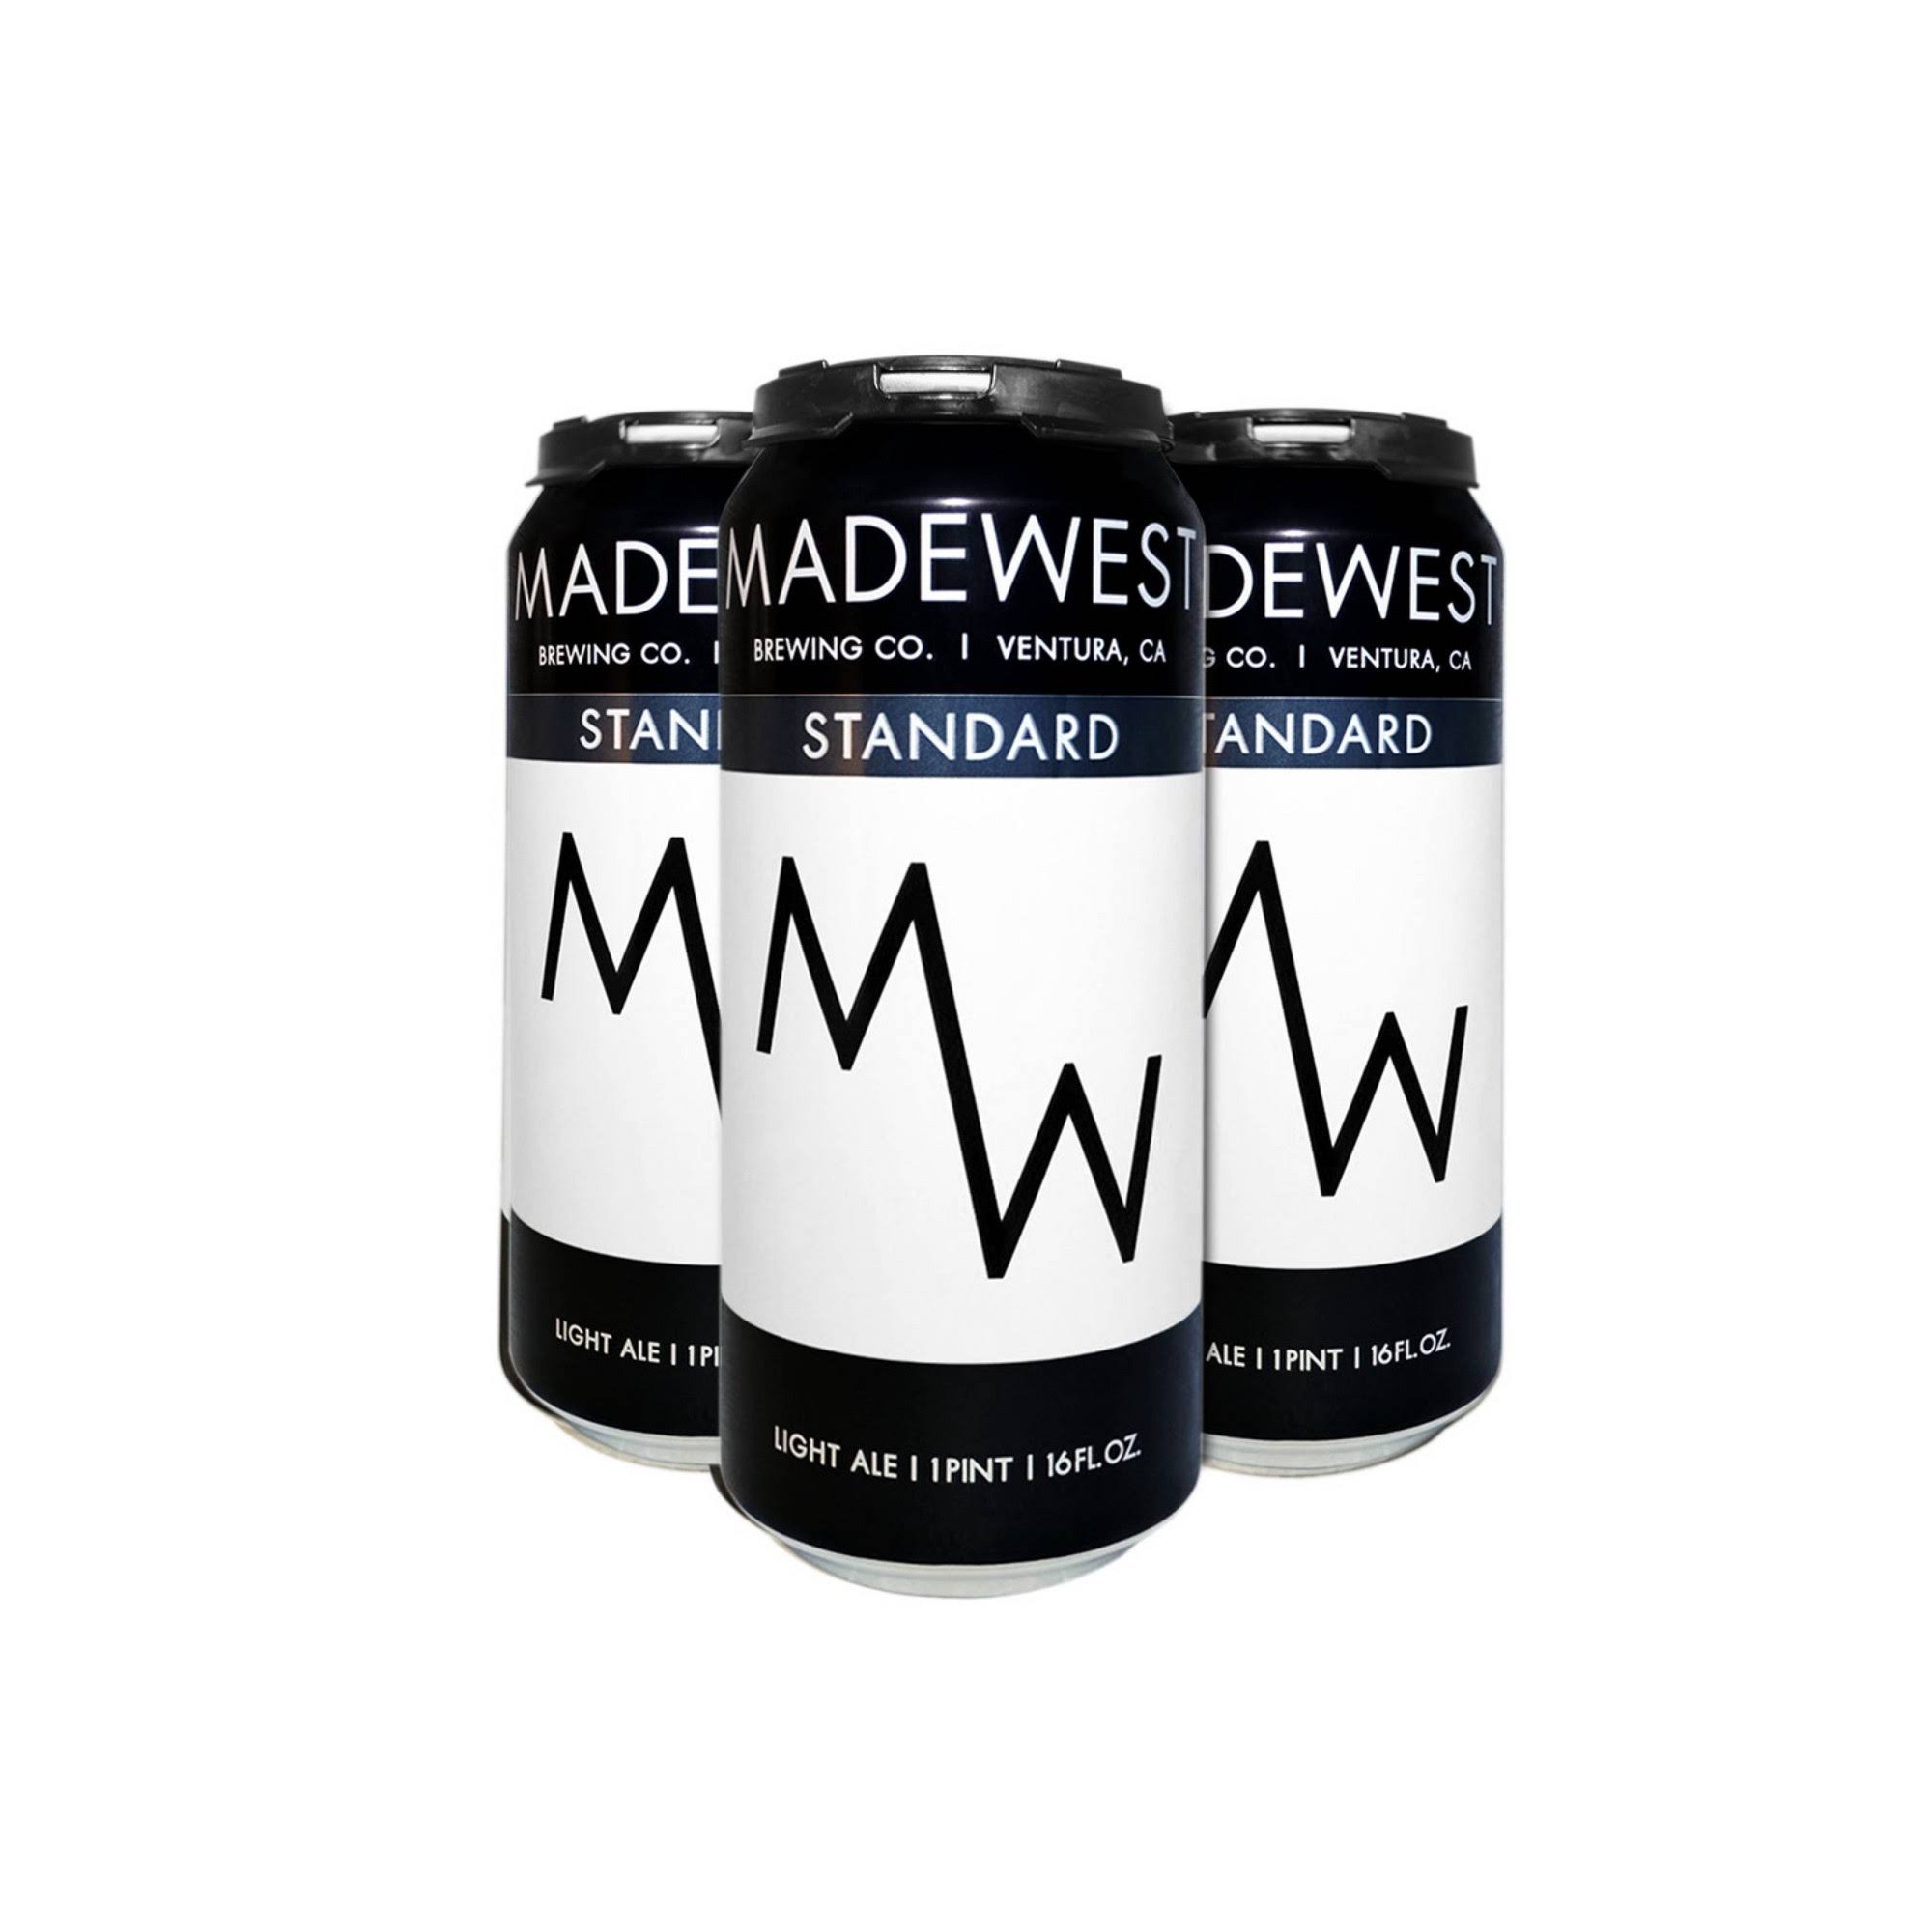 Madewest Beer, Light Ale, Standard - 4 pack, 16 fl oz cans